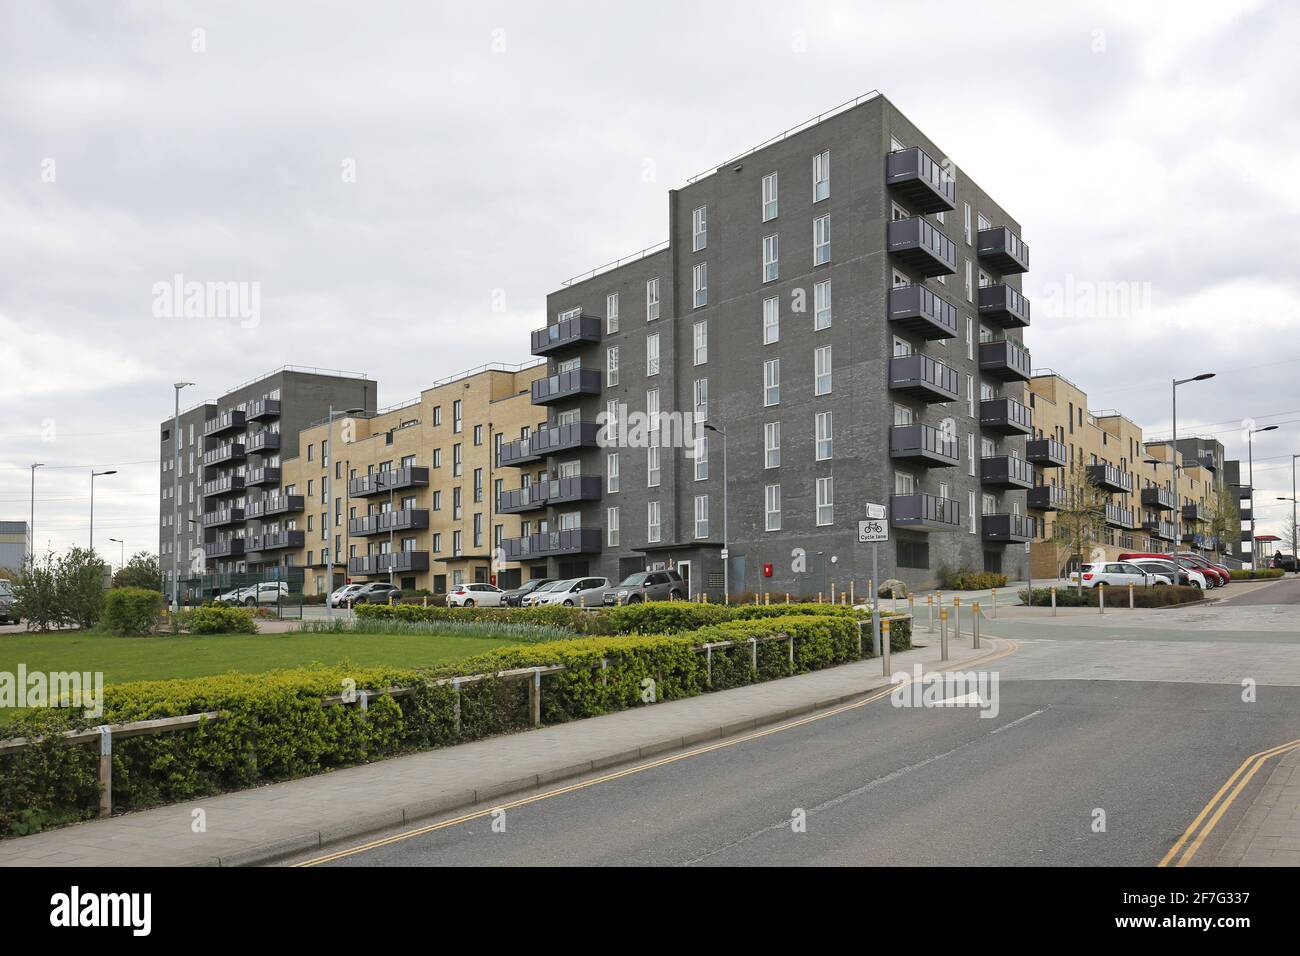 Nuovi isolati di appartamenti su Mallards Road, parte del nuovo e enorme Barking Riverside Development nella periferia orientale di Londra, Regno Unito Foto Stock